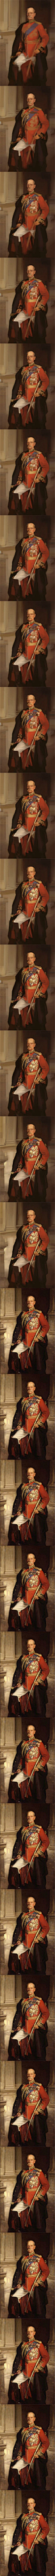 【过程长条图】 原作是约翰·辛格·萨金特（1856-1925）的肖像作品《Frederick Sleigh Roberts》（第一代罗伯茨伯爵，英国陆军元帅的肖像画），动态图戳这里看→O网页链接